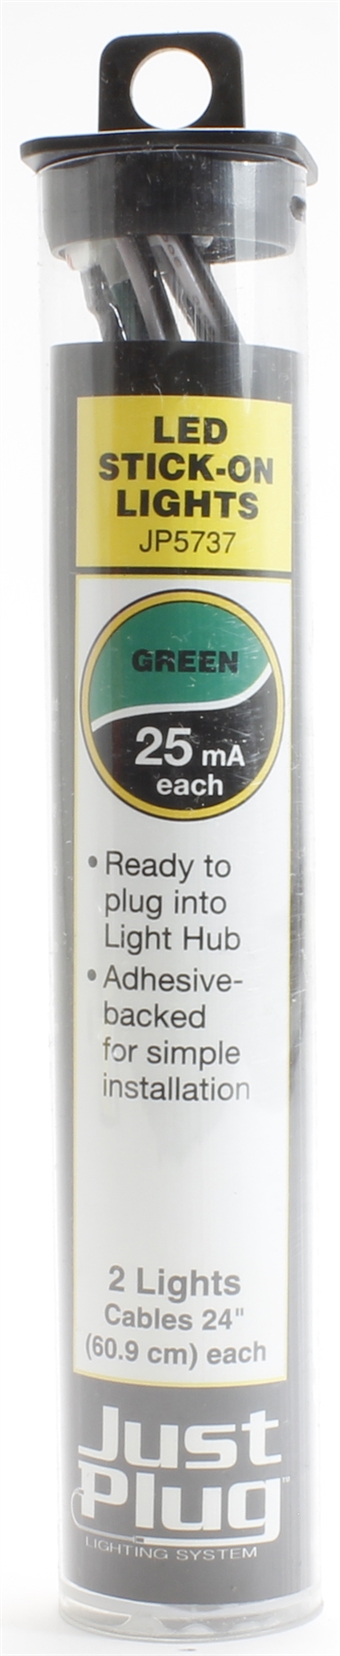 Green LED stick-on lights for Just Plug lighting system